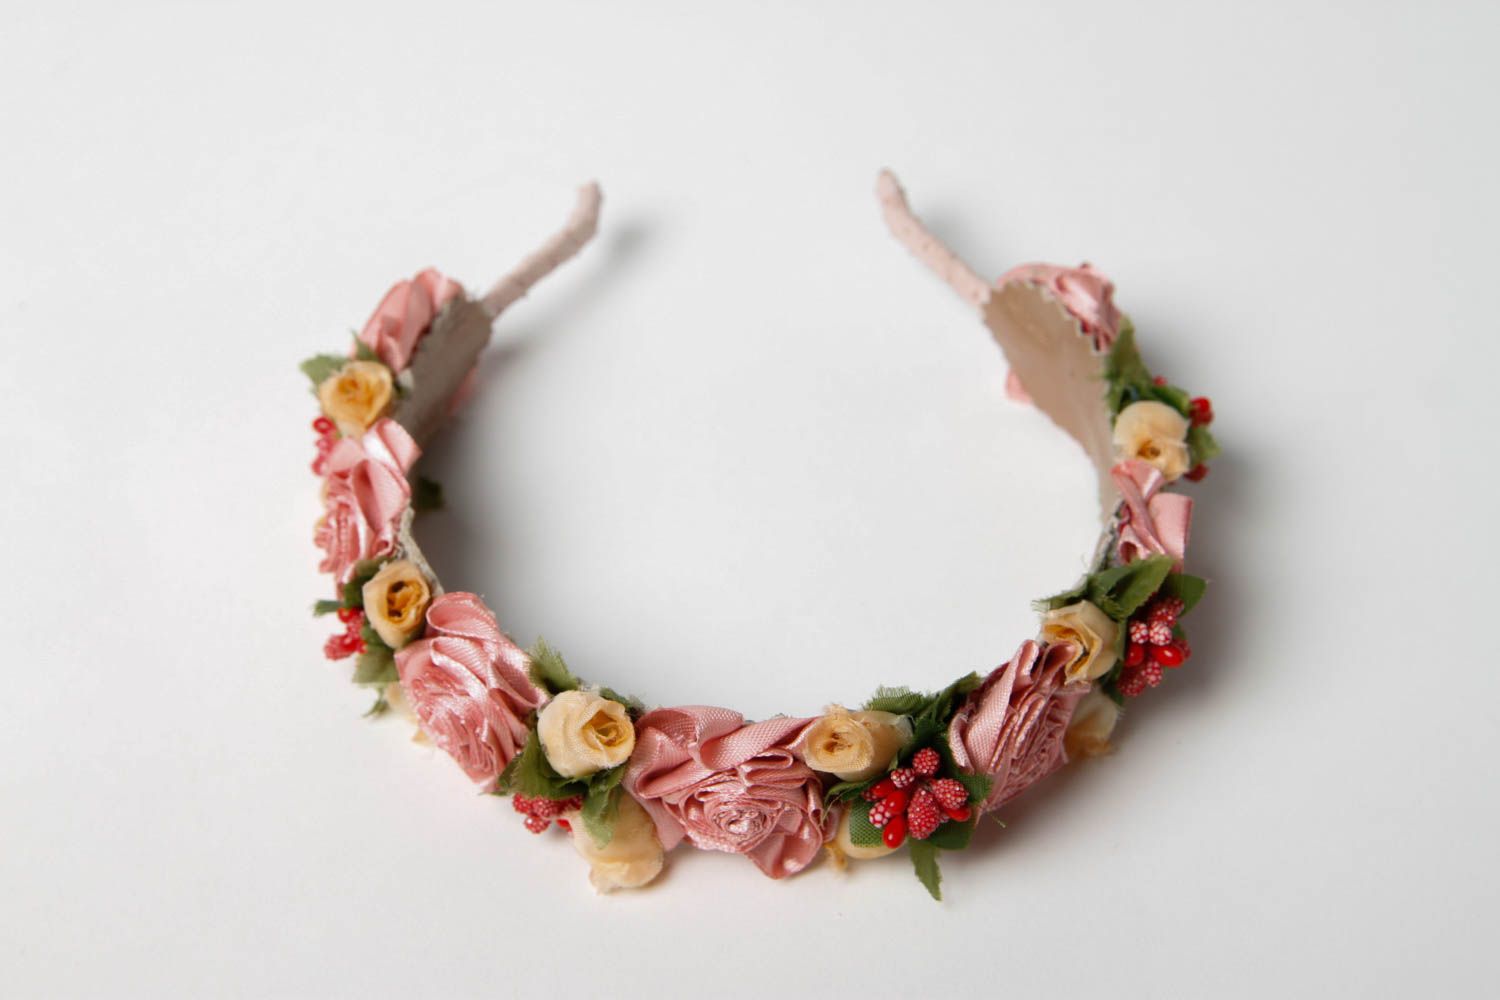 Handmade Blumen Haarreif Haar Schmuck Accessoire für Frauen ausgefallen foto 3